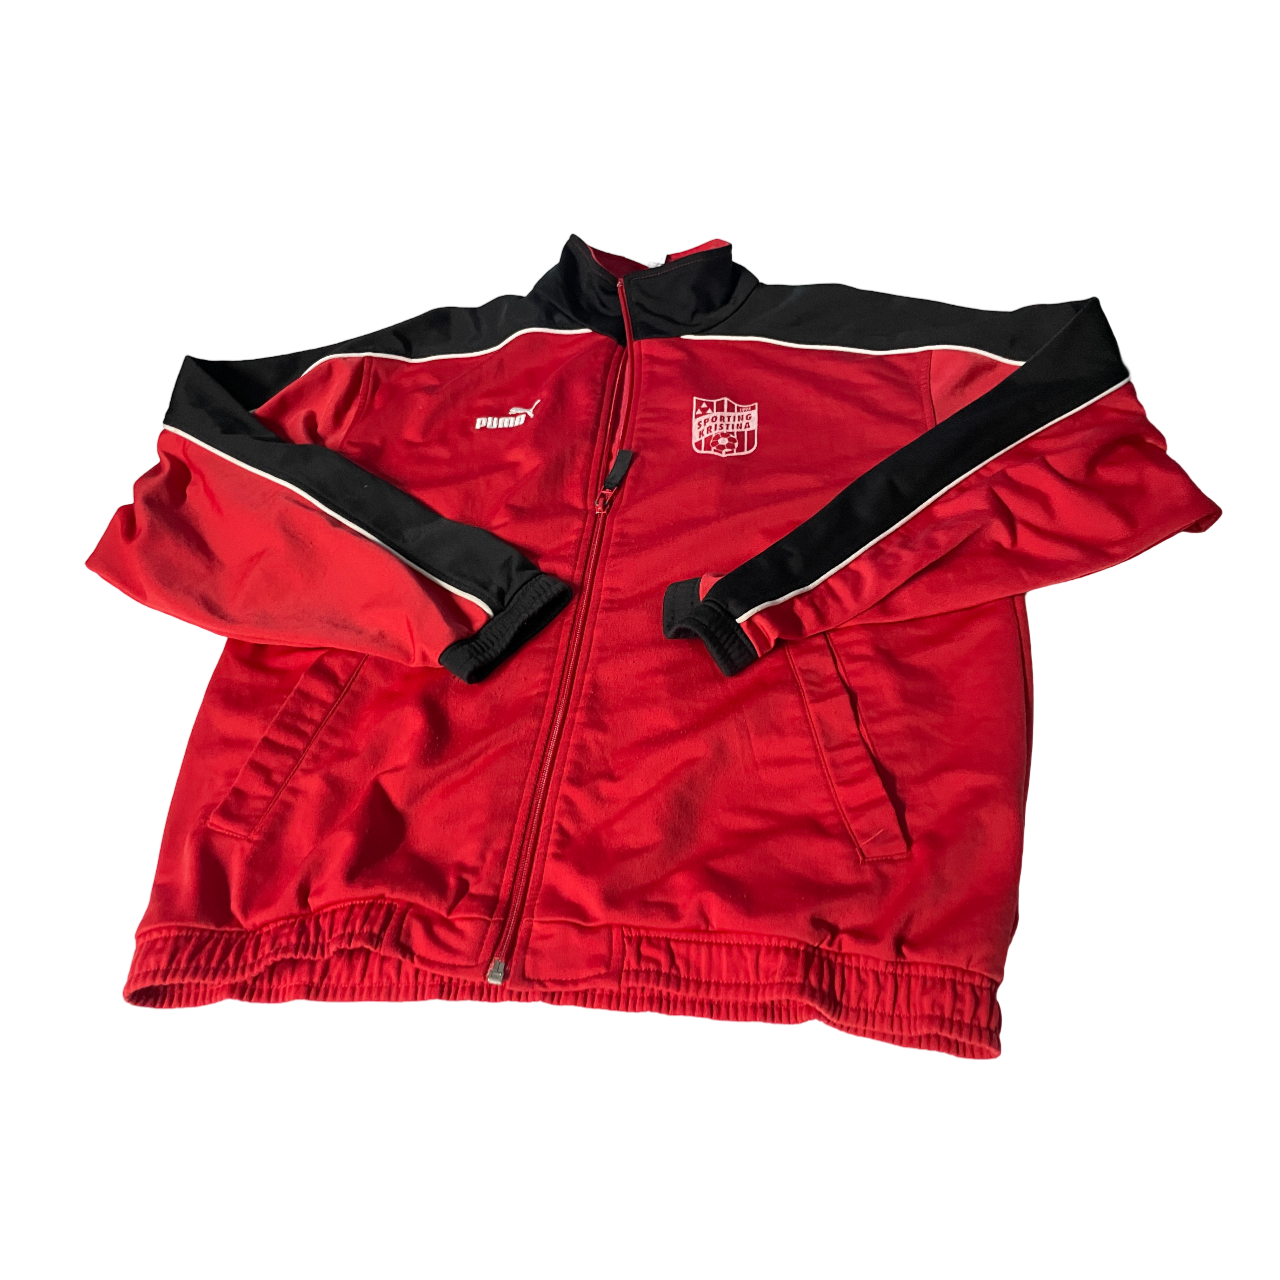  Vintage Puma Track Jacket 90s red black   Finnish football team Sporting Kristina  track top SIZE M/L  L 27 W 21  SKU 5135